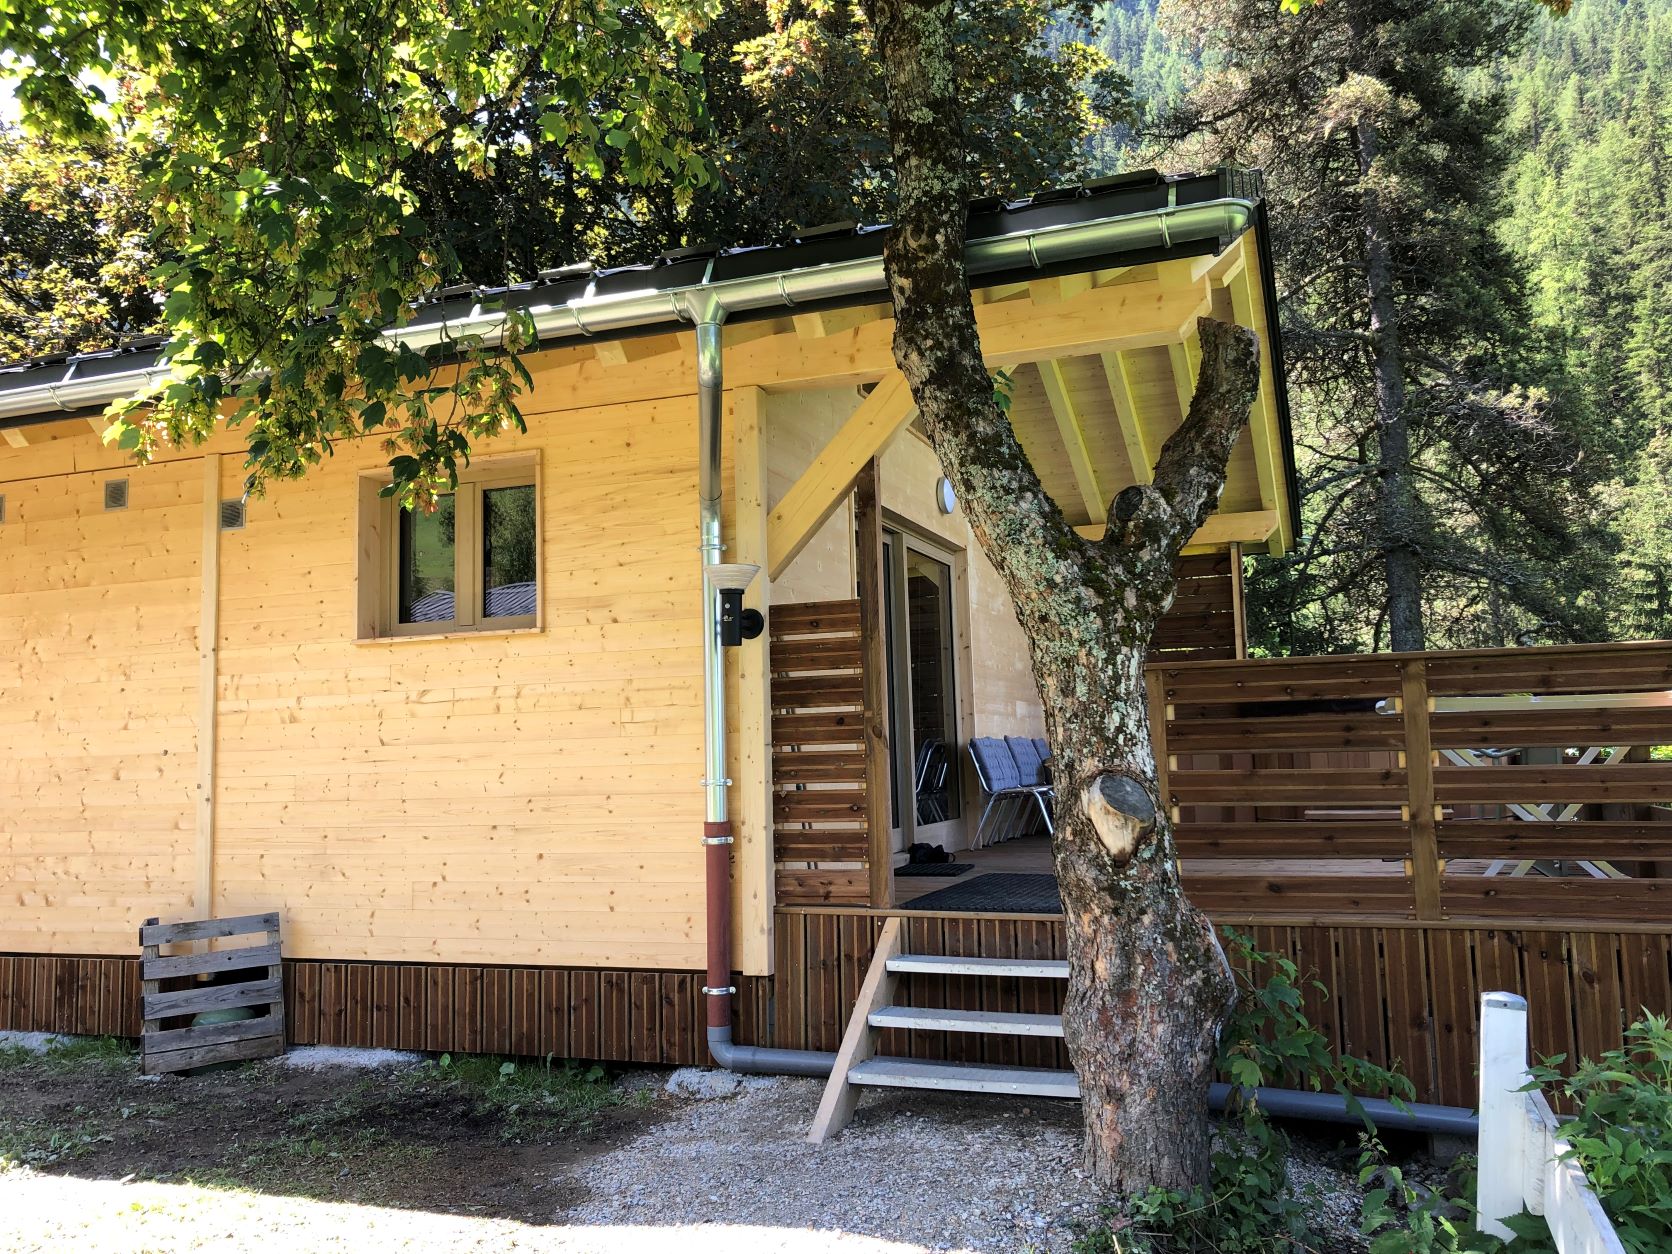 Mietunterkunft - Gamme Chrystal - Chalet Ulysse 54M² 3 Schlafzimmer + Halbüberdachte Terrasse 24M² Mit Nordischem Bad - Camping Les Lanchettes